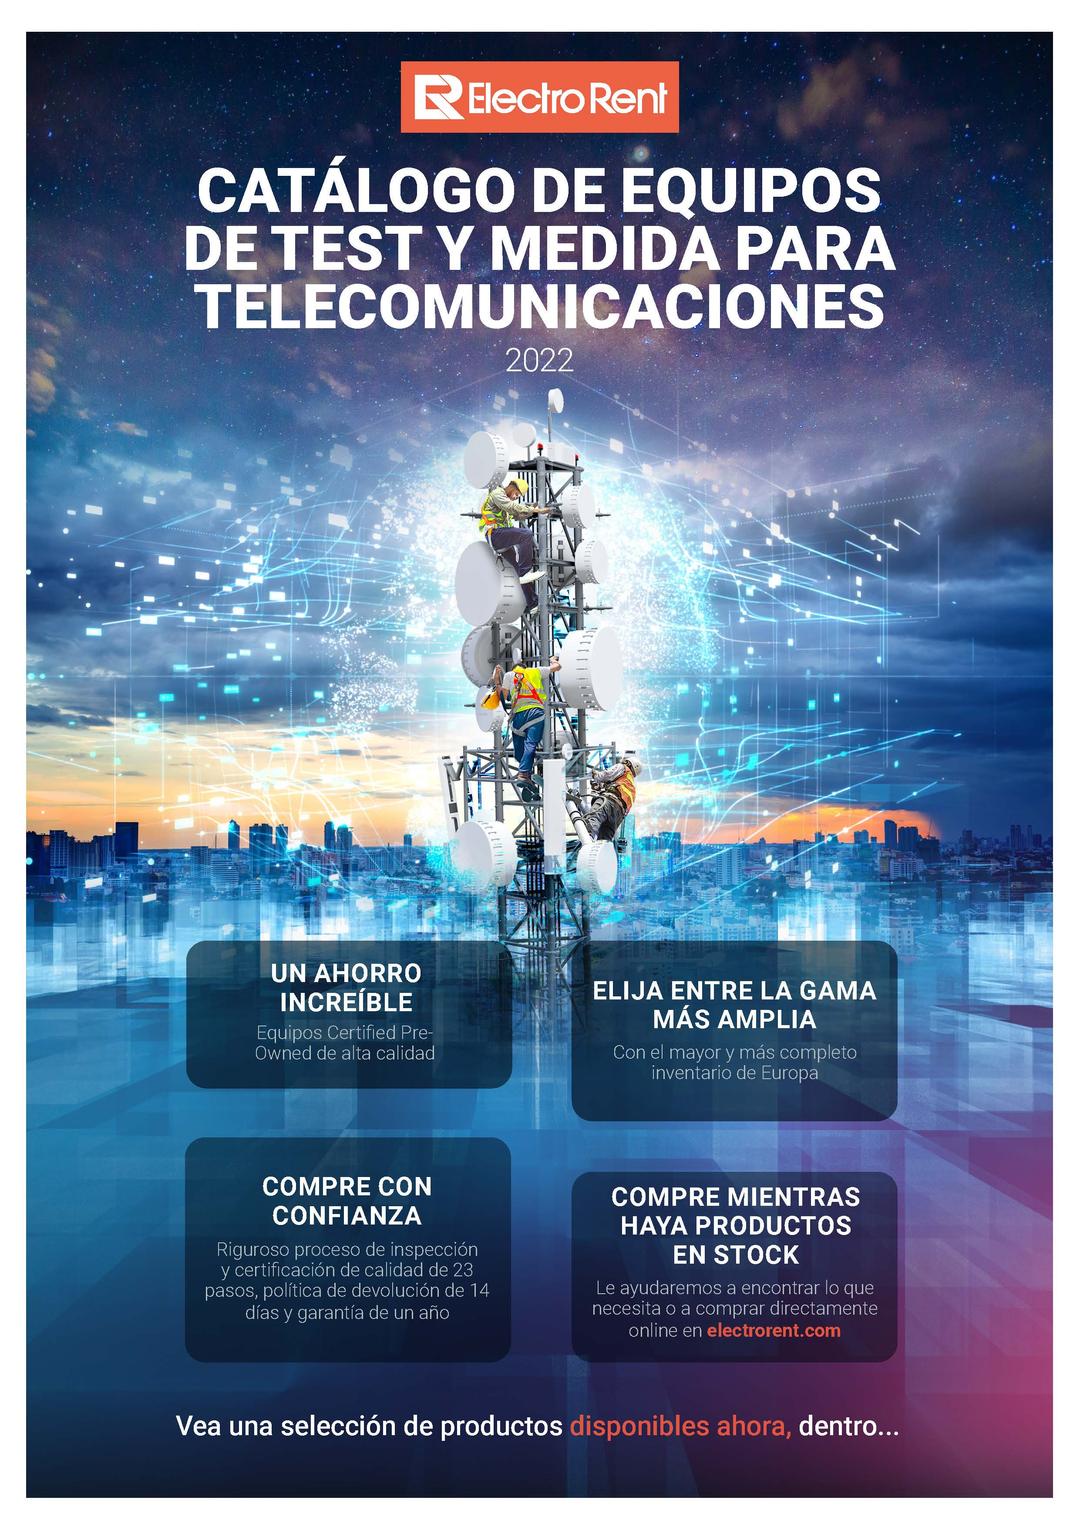 CATÁLOGO DE EQUIPOS DE TEST Y MEDIDA PARA TELECOMUNICACIONES, imagen